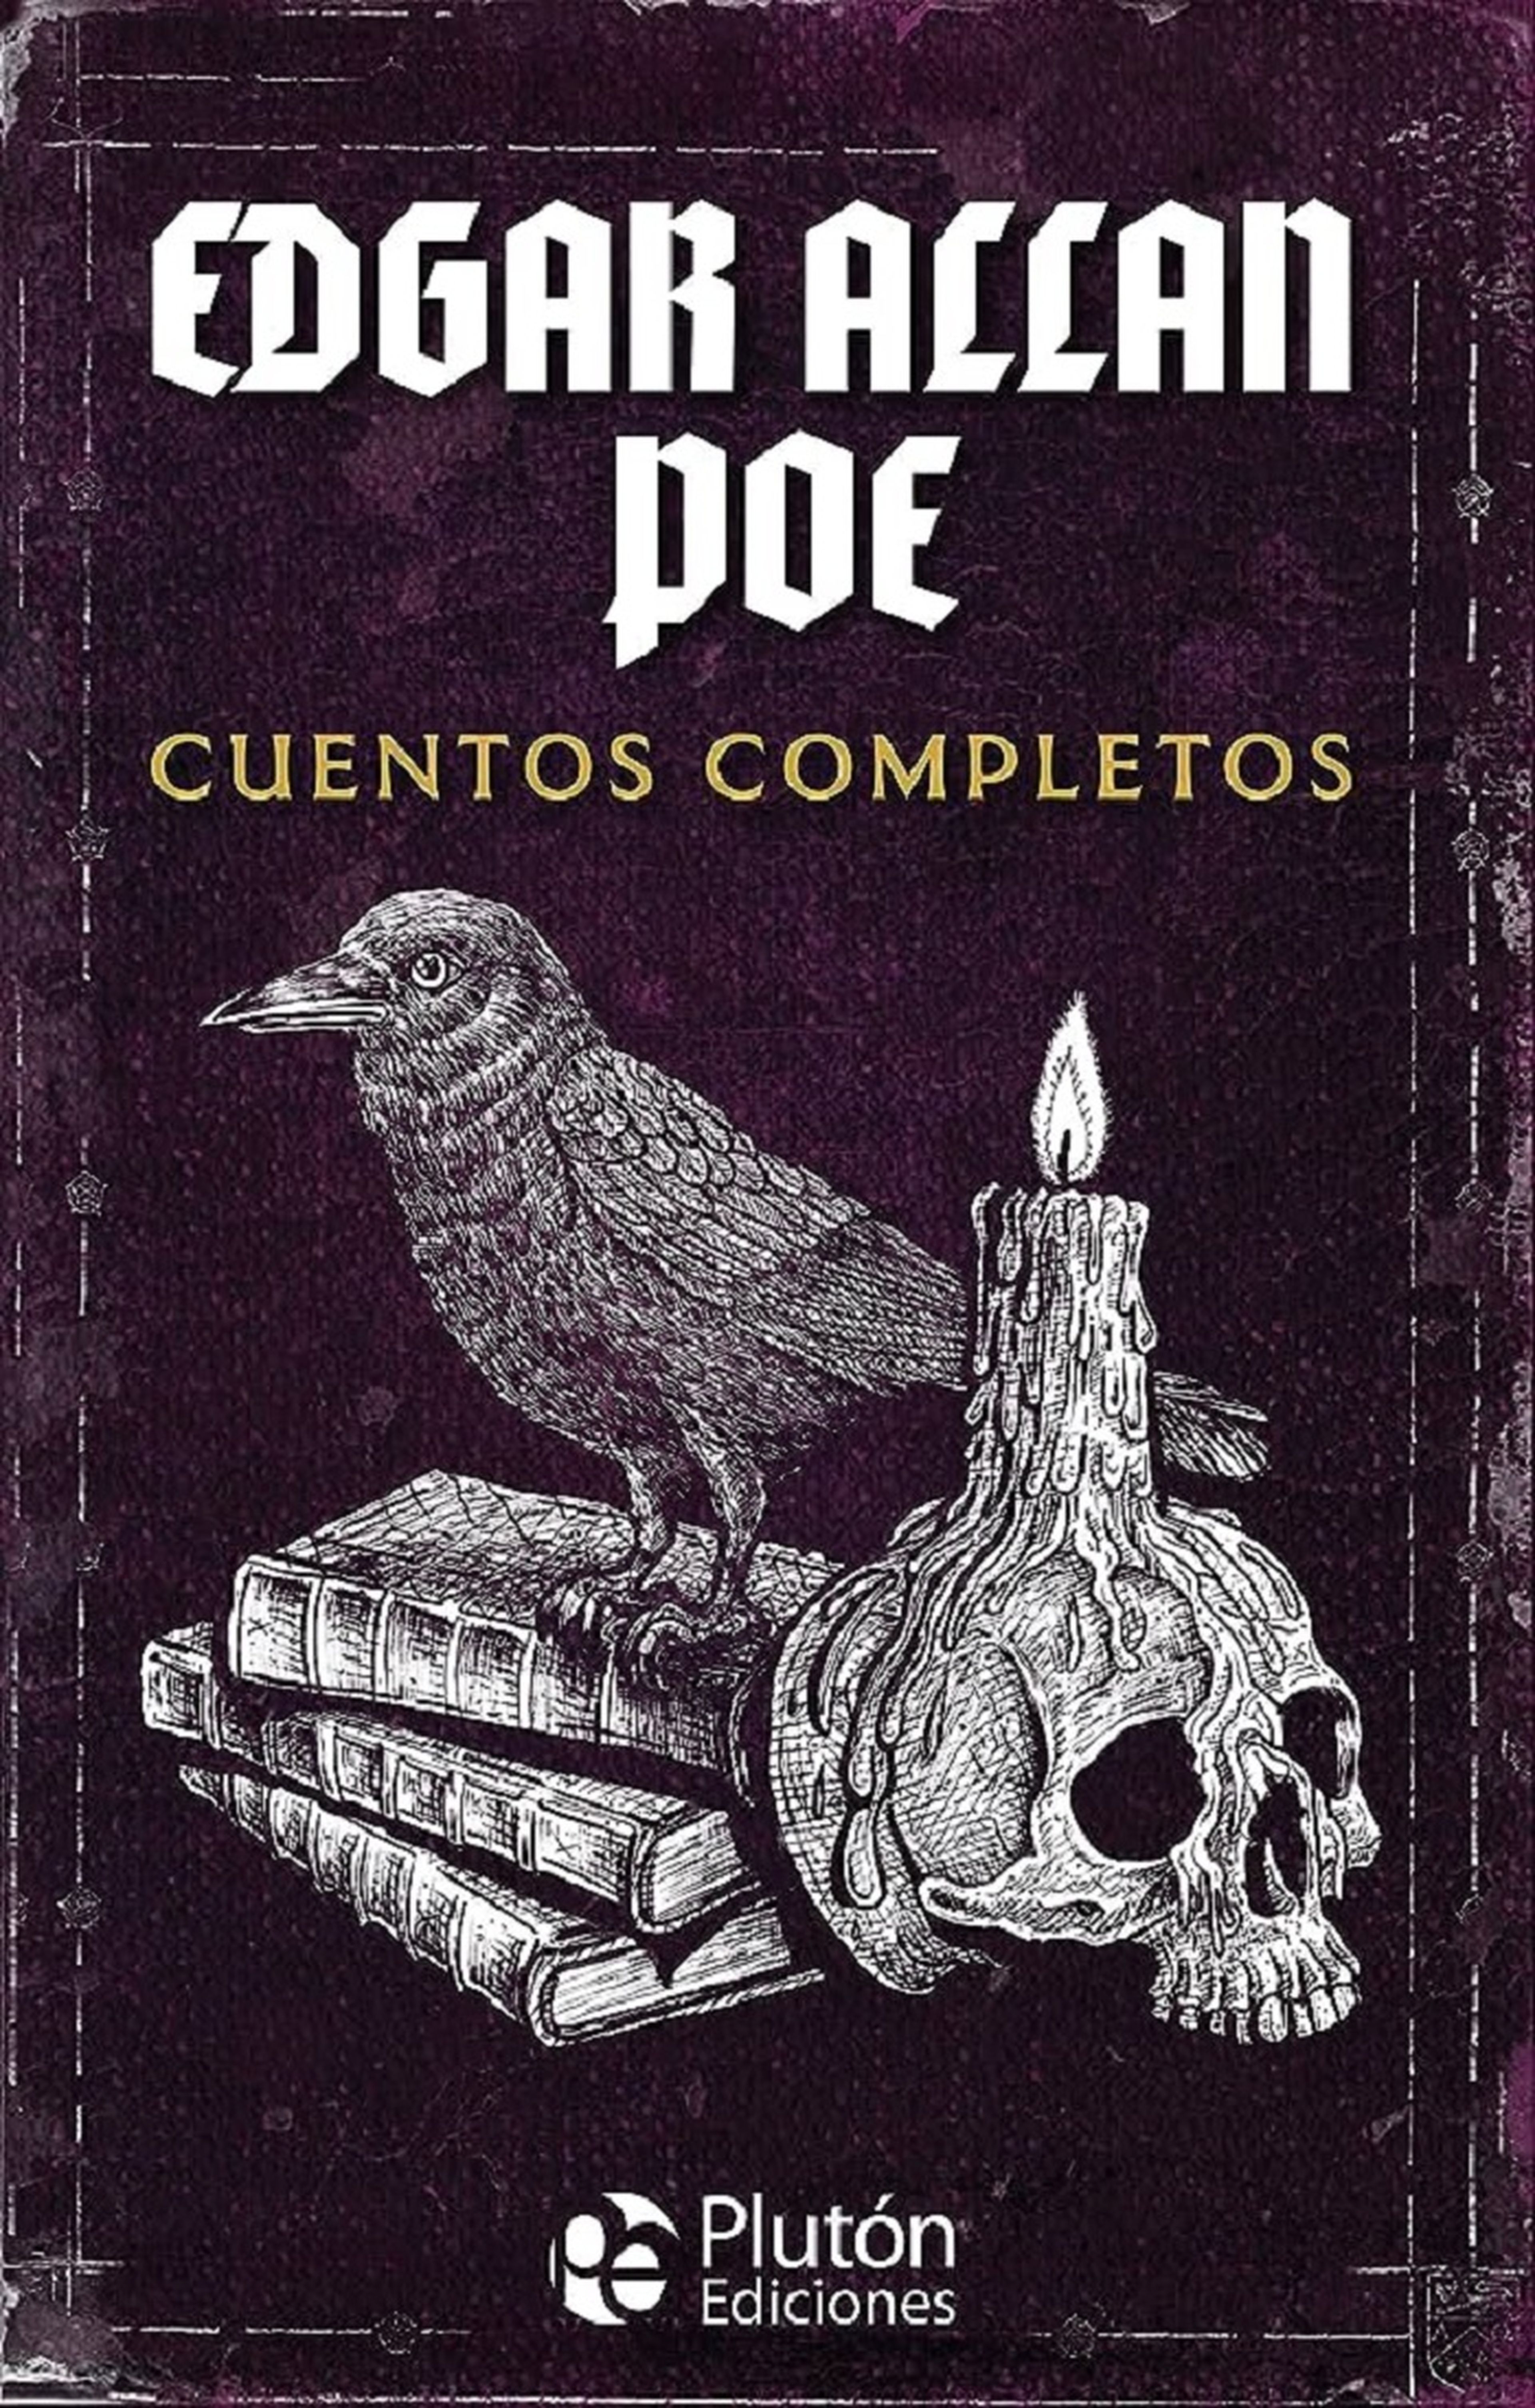 Cuentos completos de Edgar Allan Poe